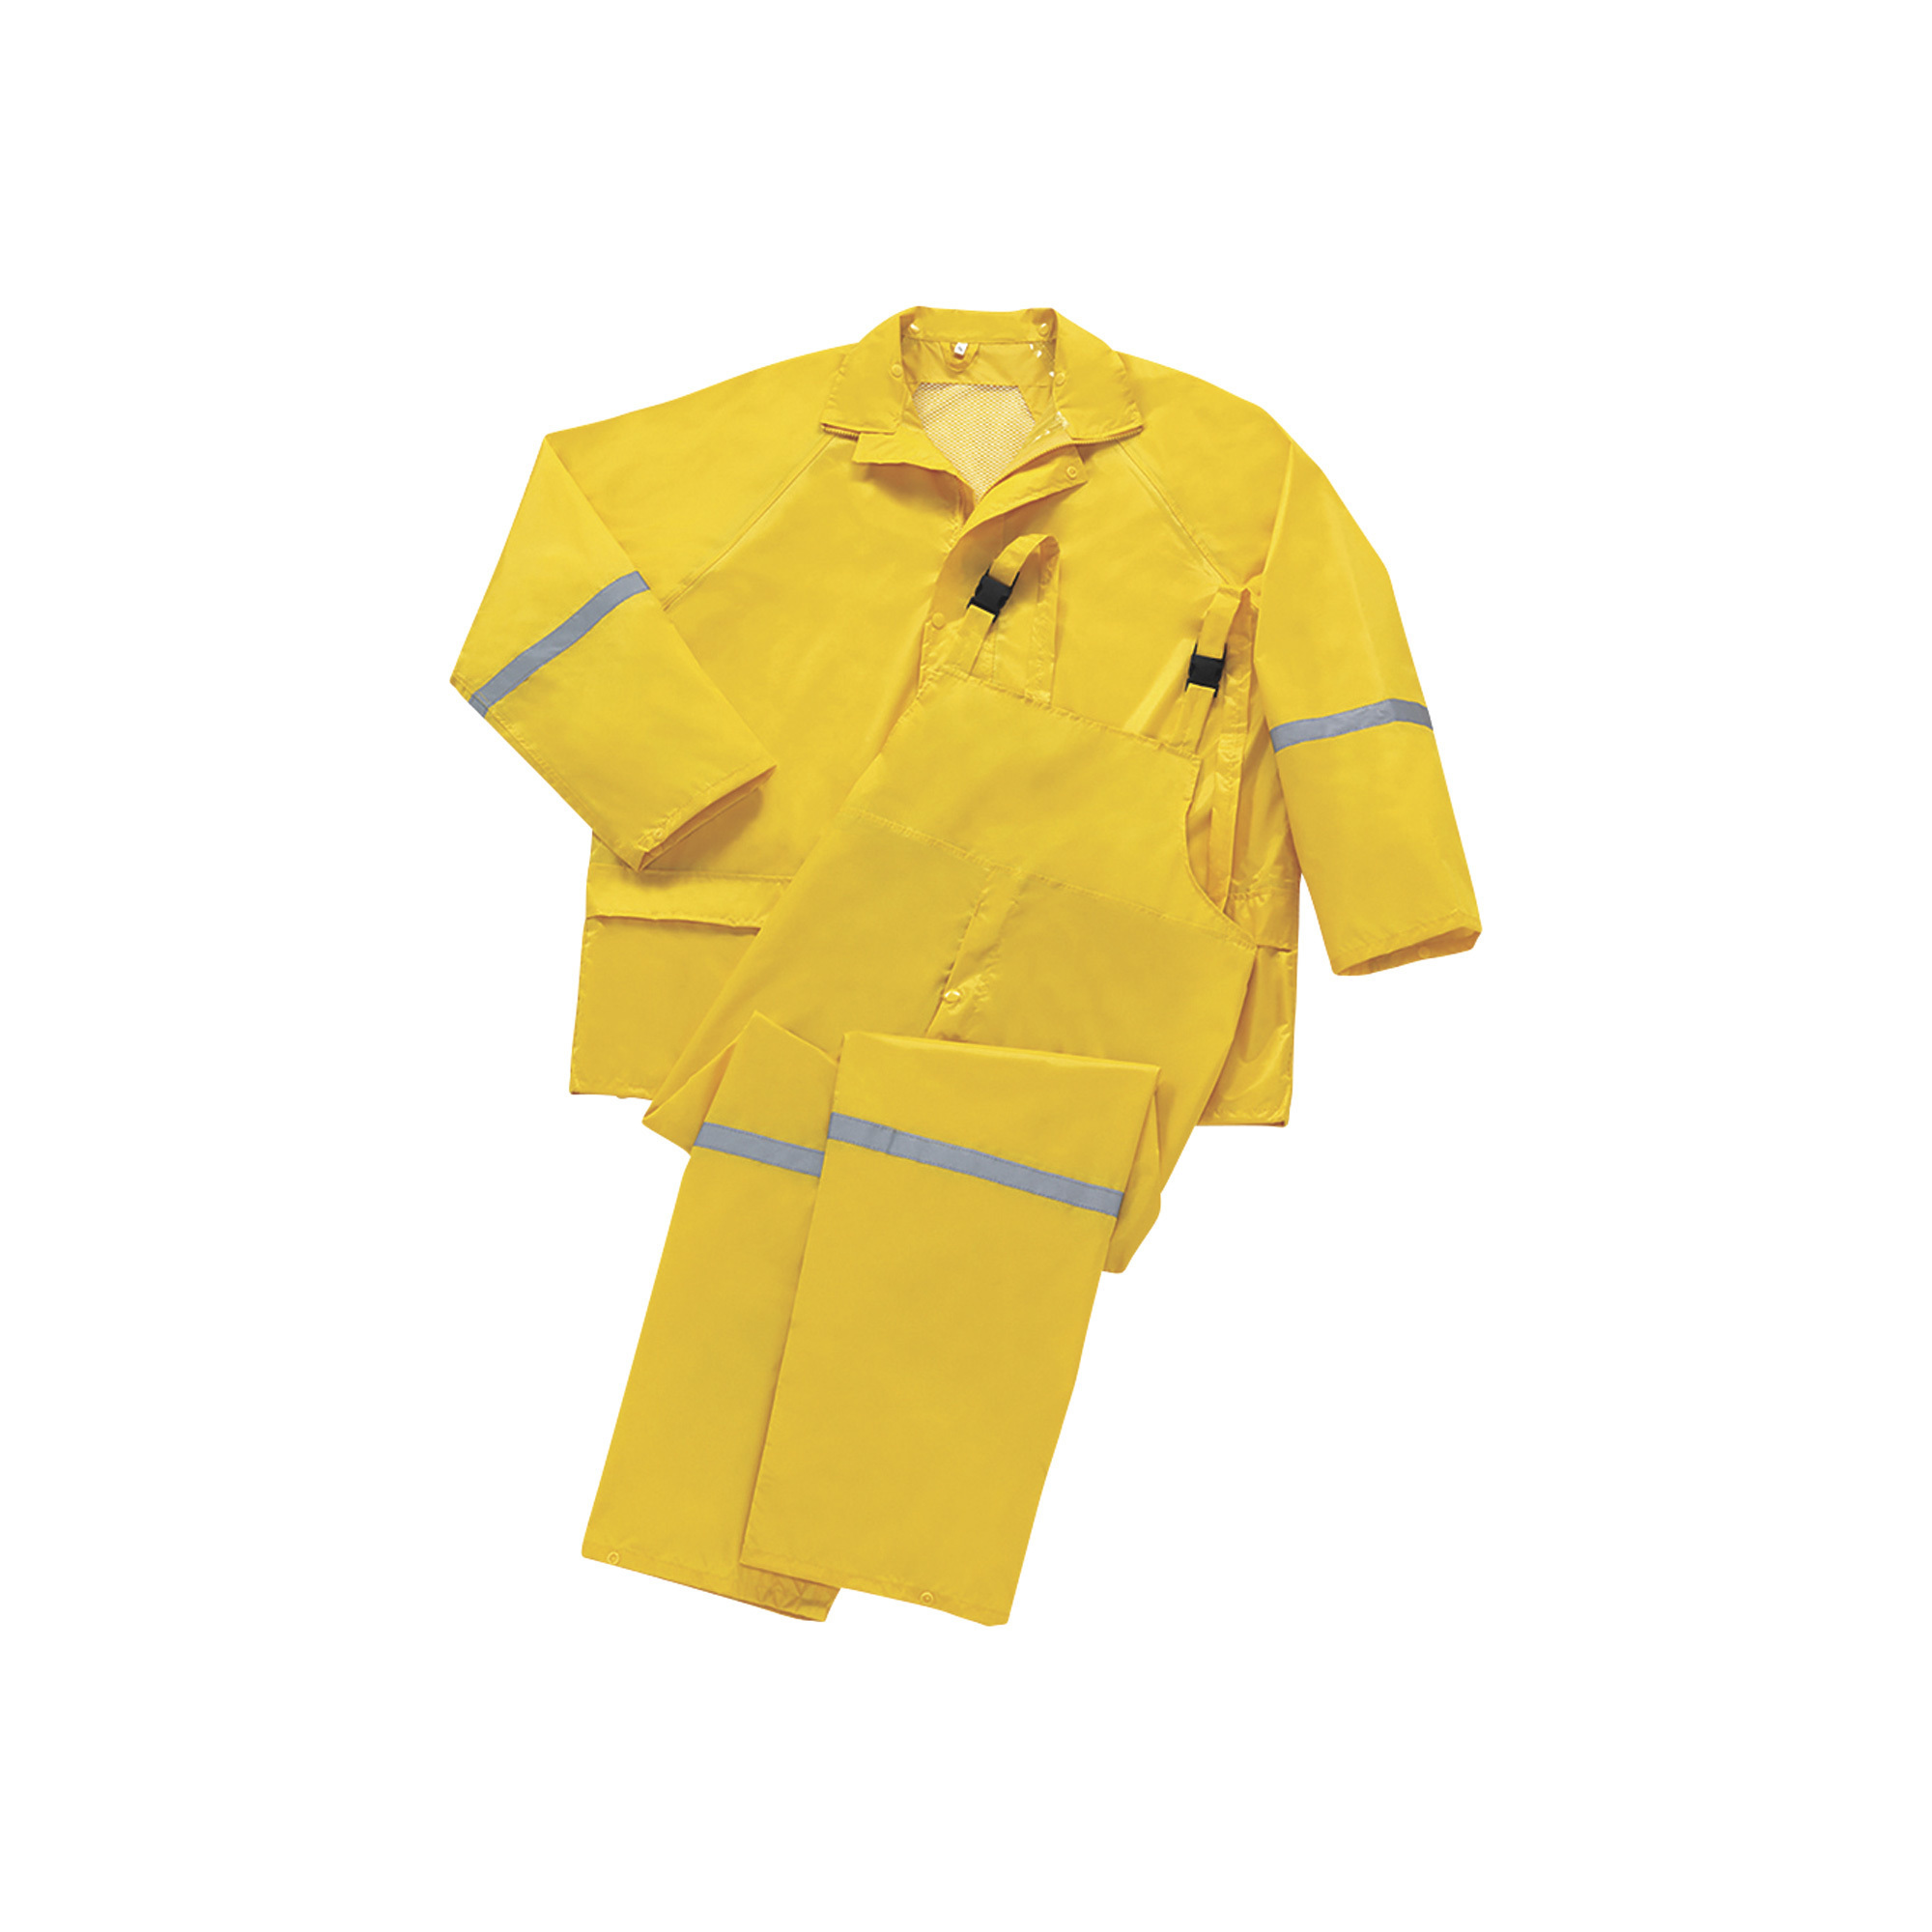 West Chester Men's Protective Gear 3-Piece Rain Suit - Yellow, 2XL, Model 44336/L